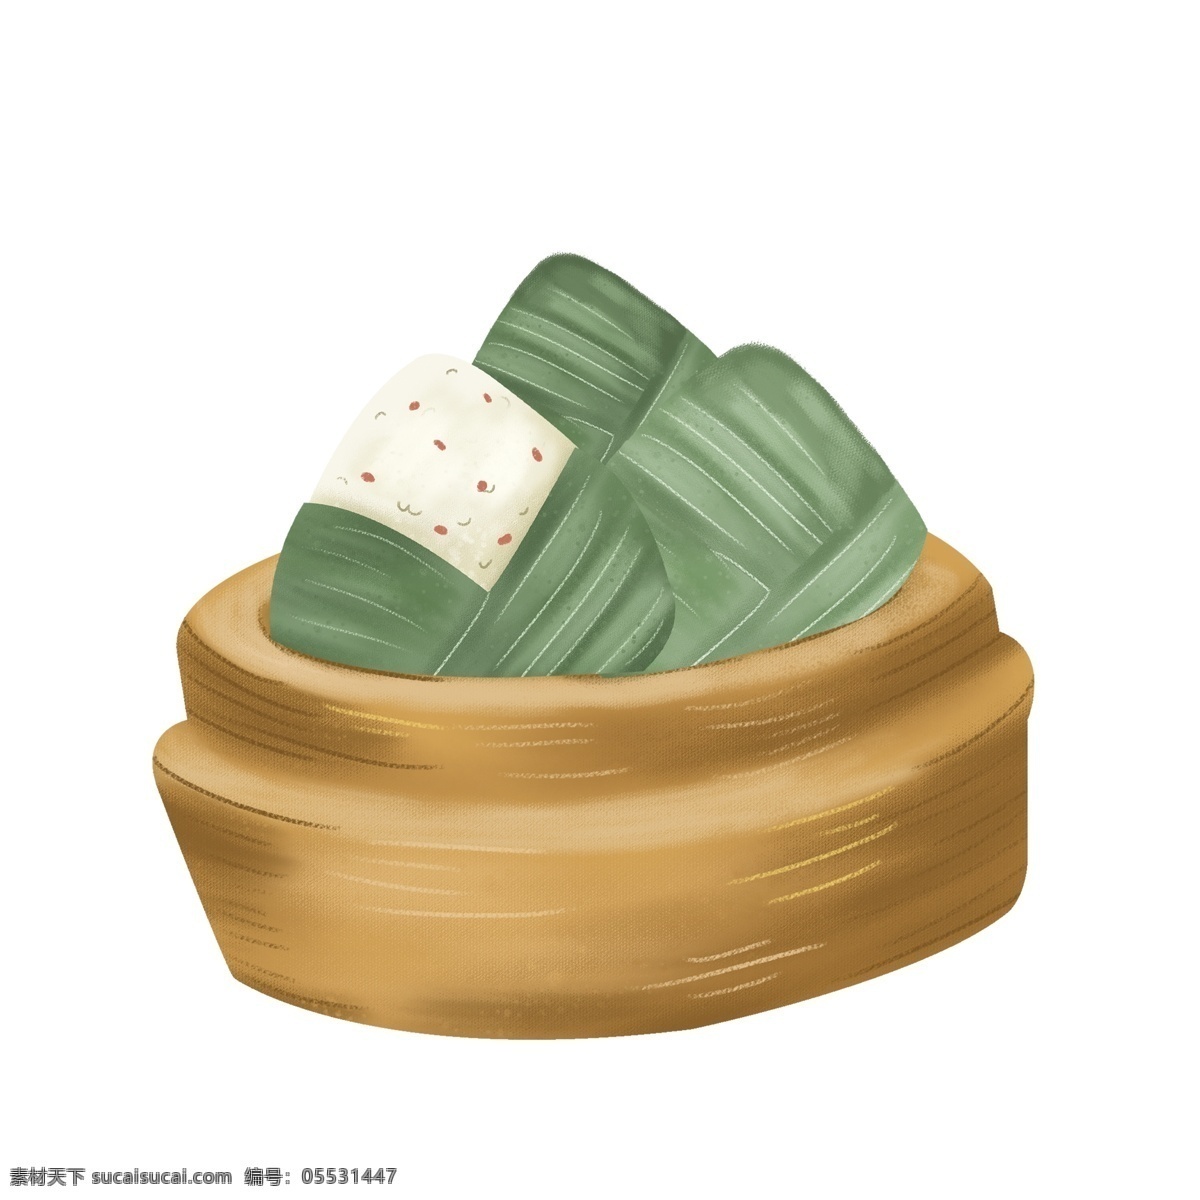 端午节 粽子 图案 元素 美食 传统美食 节日元素 端午粽子 元素设计 手绘元素 免抠元素